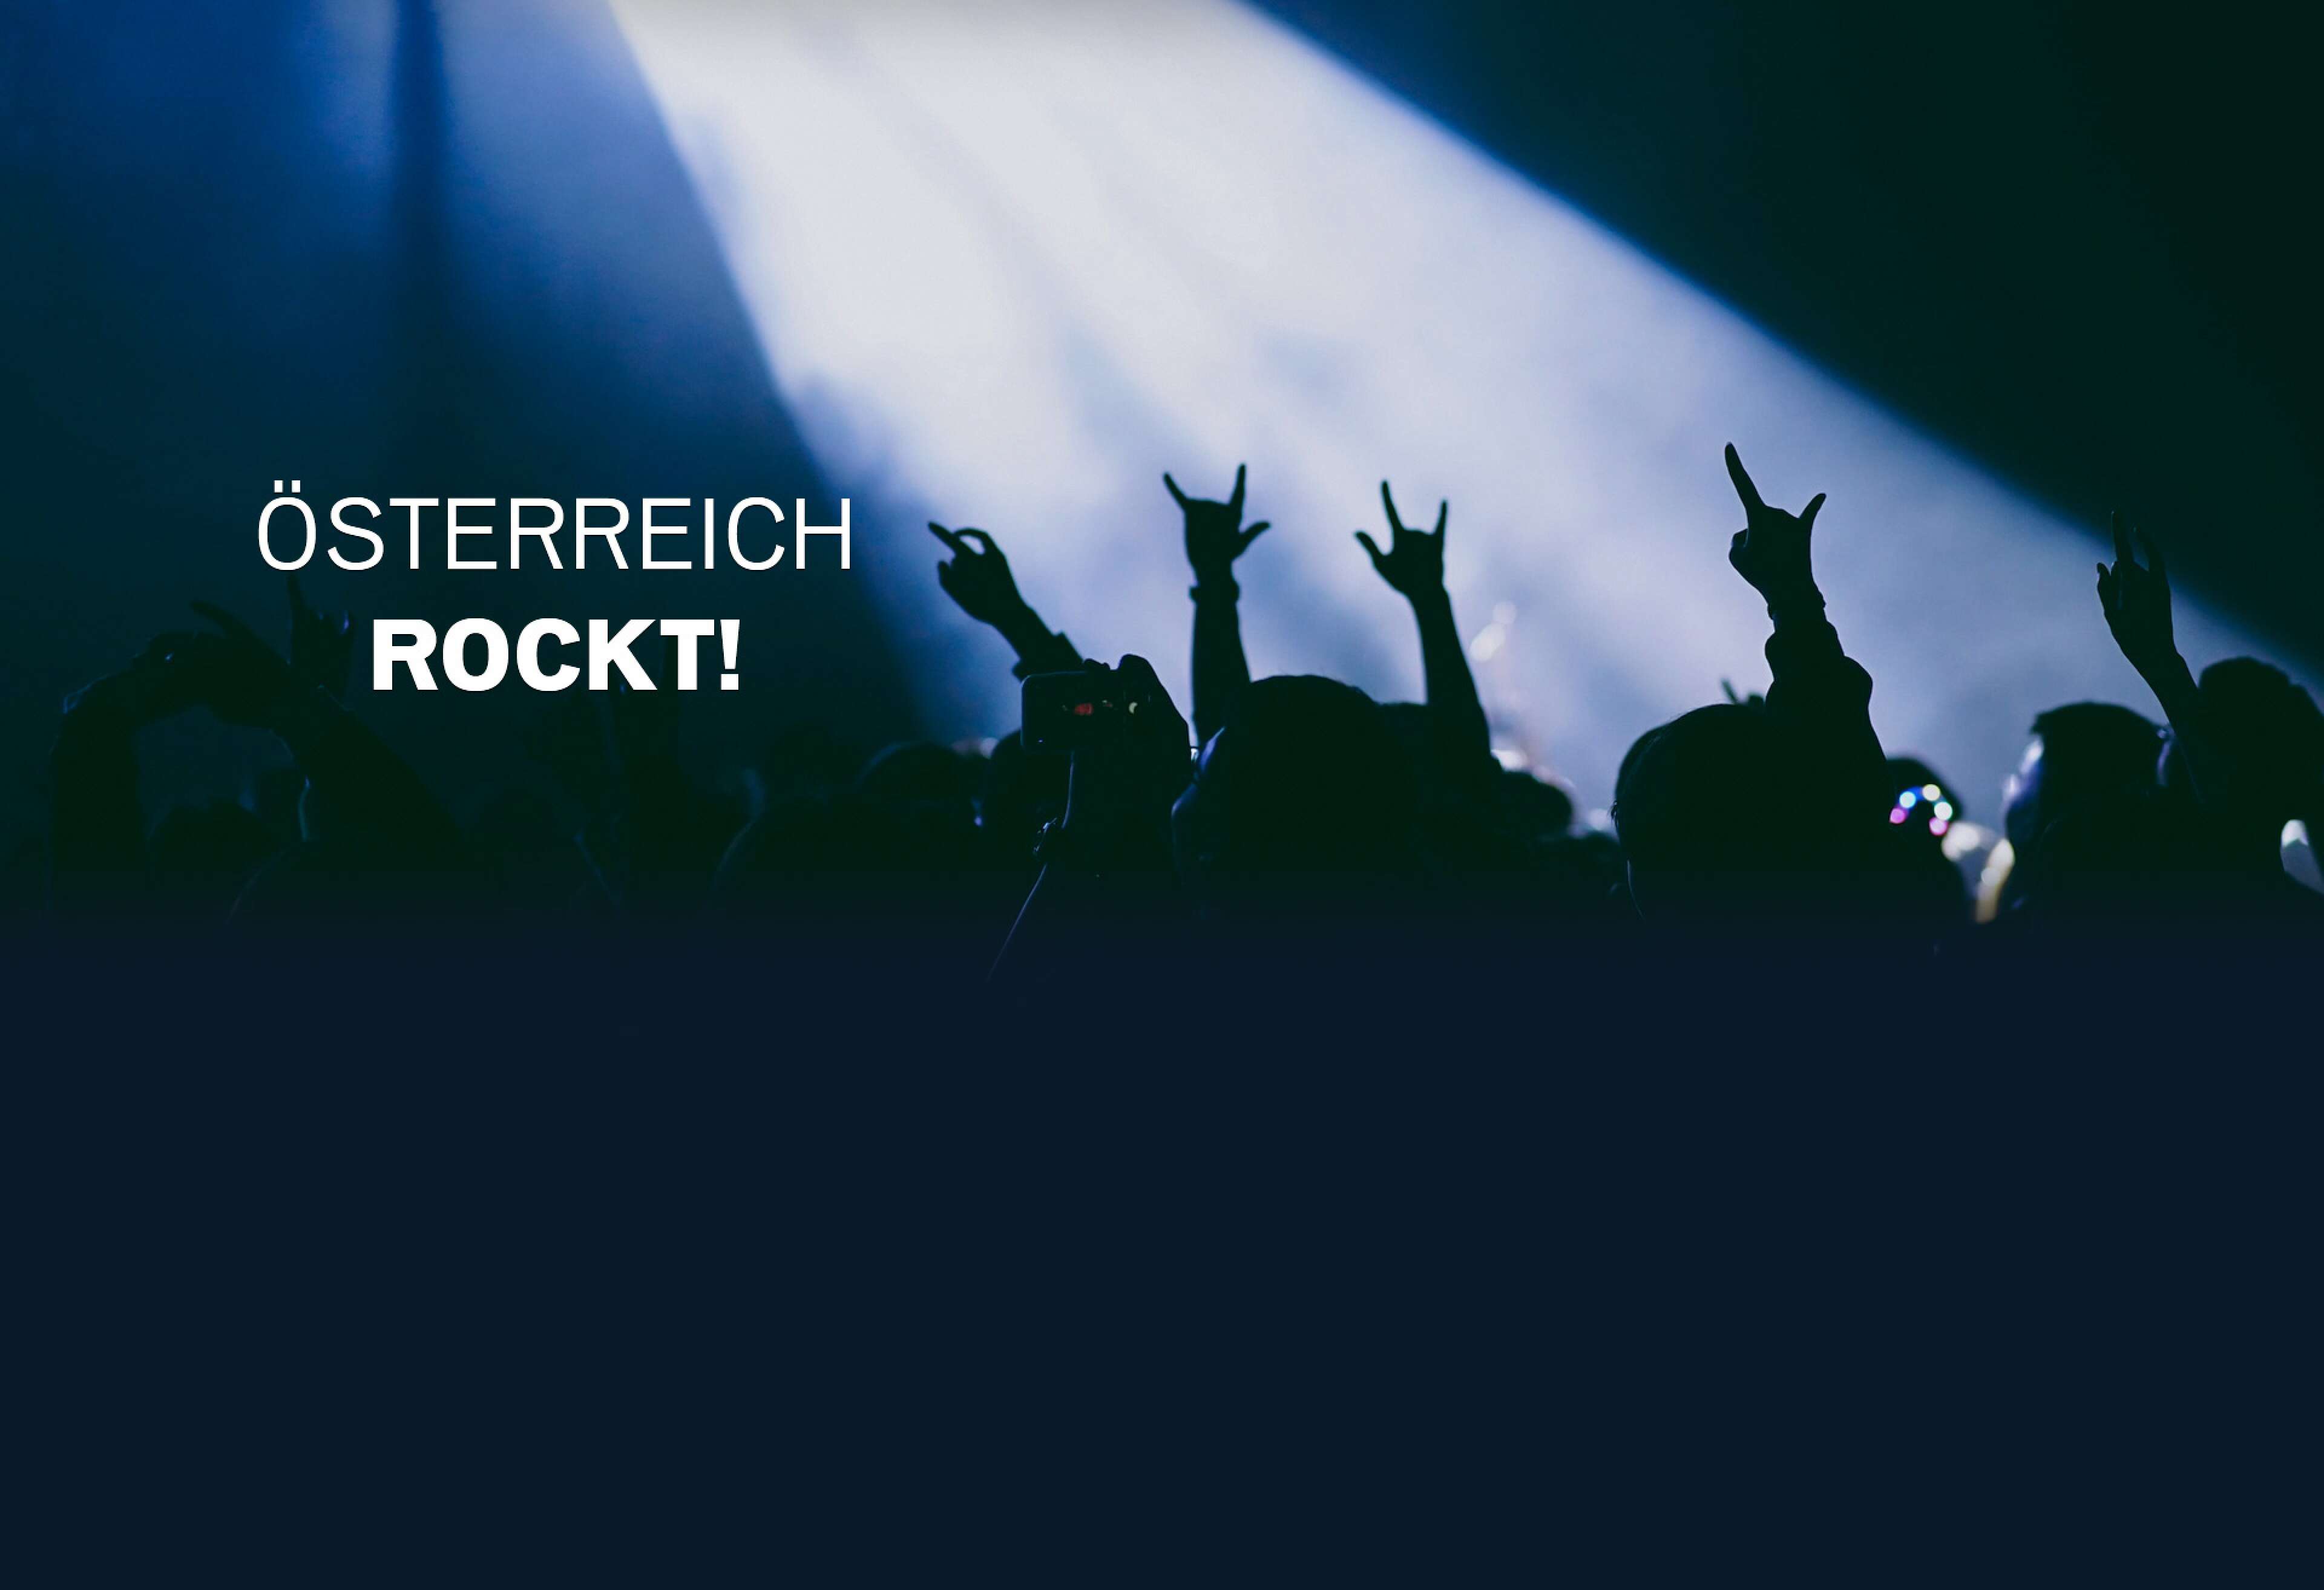 Bild von erhobenen Armen bei einem Konzert mit Aufschrift "Österreich rockt"!